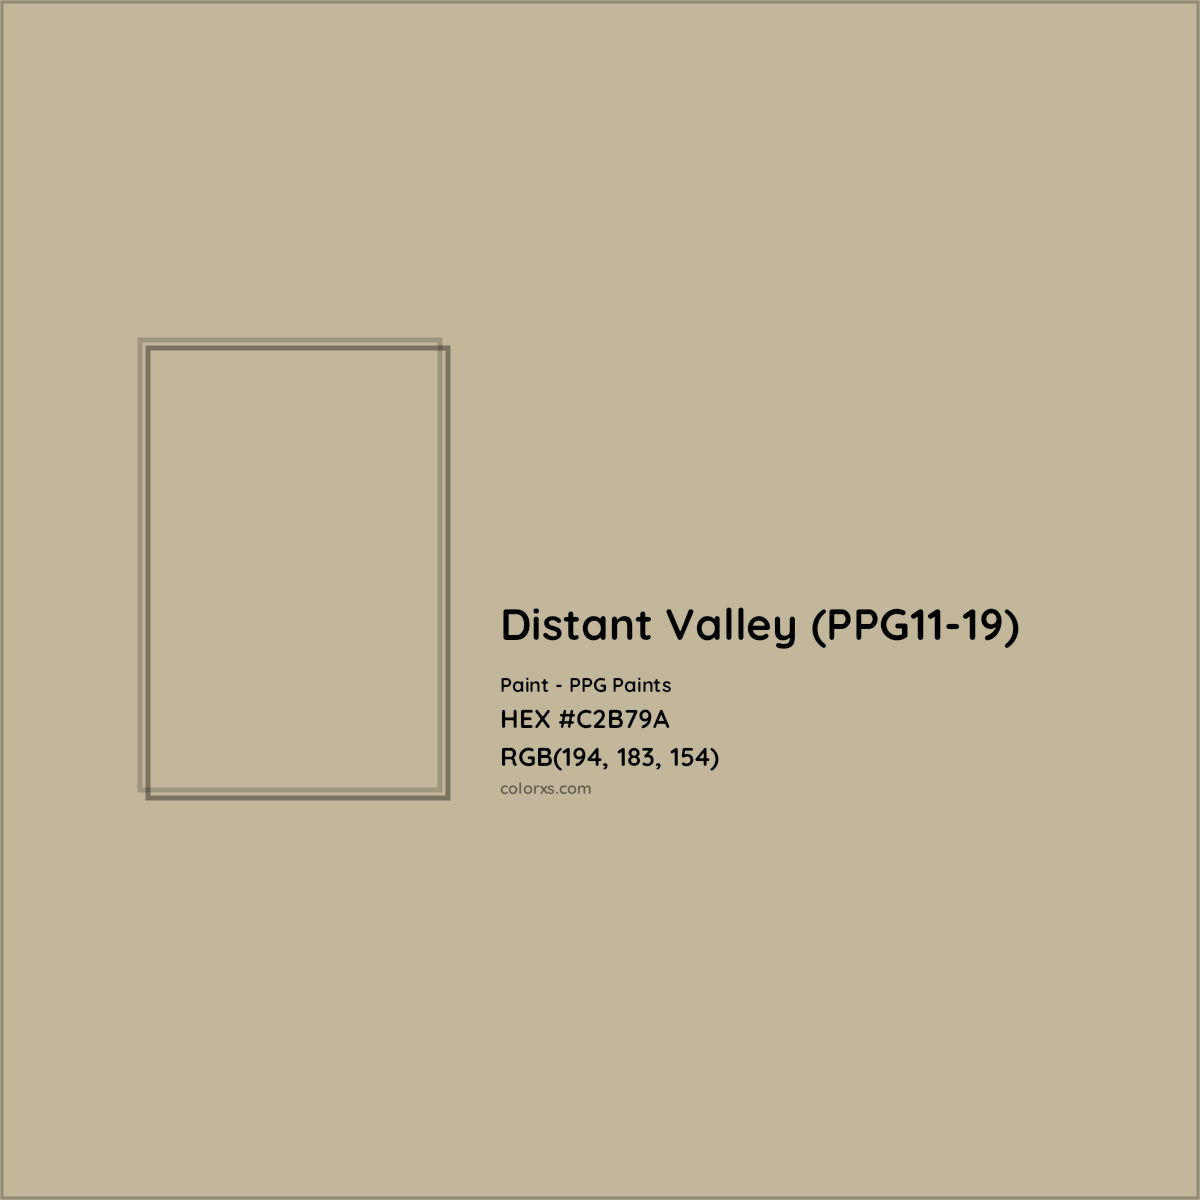 HEX #C2B79A Distant Valley (PPG11-19) Paint PPG Paints - Color Code